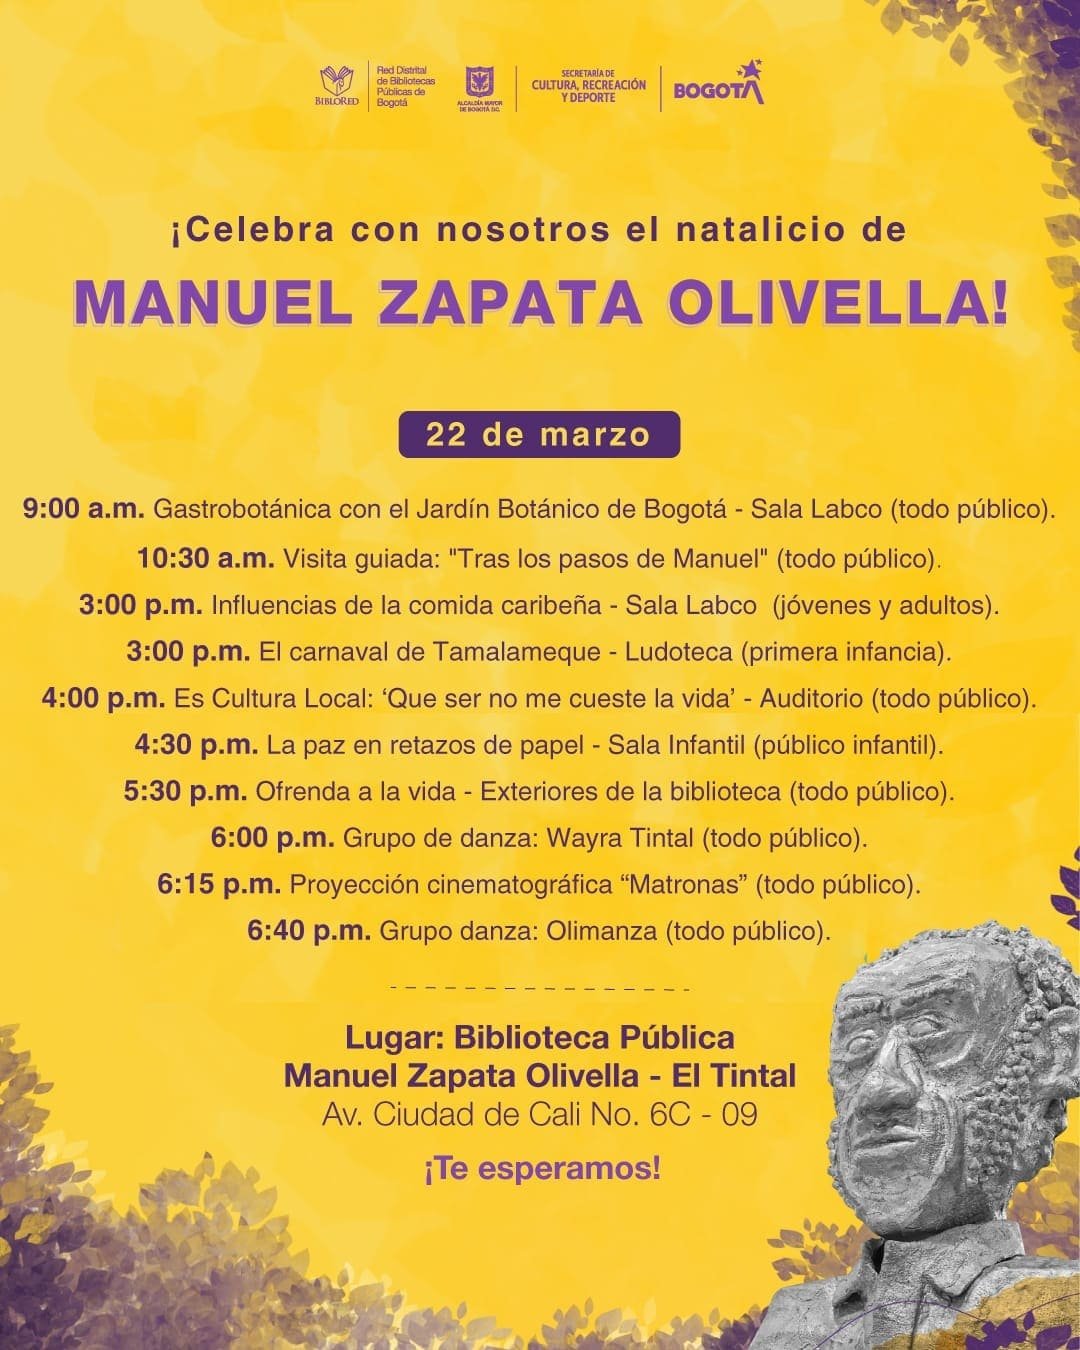 Celebremos el natalicio de Manuel Zapata Olivella